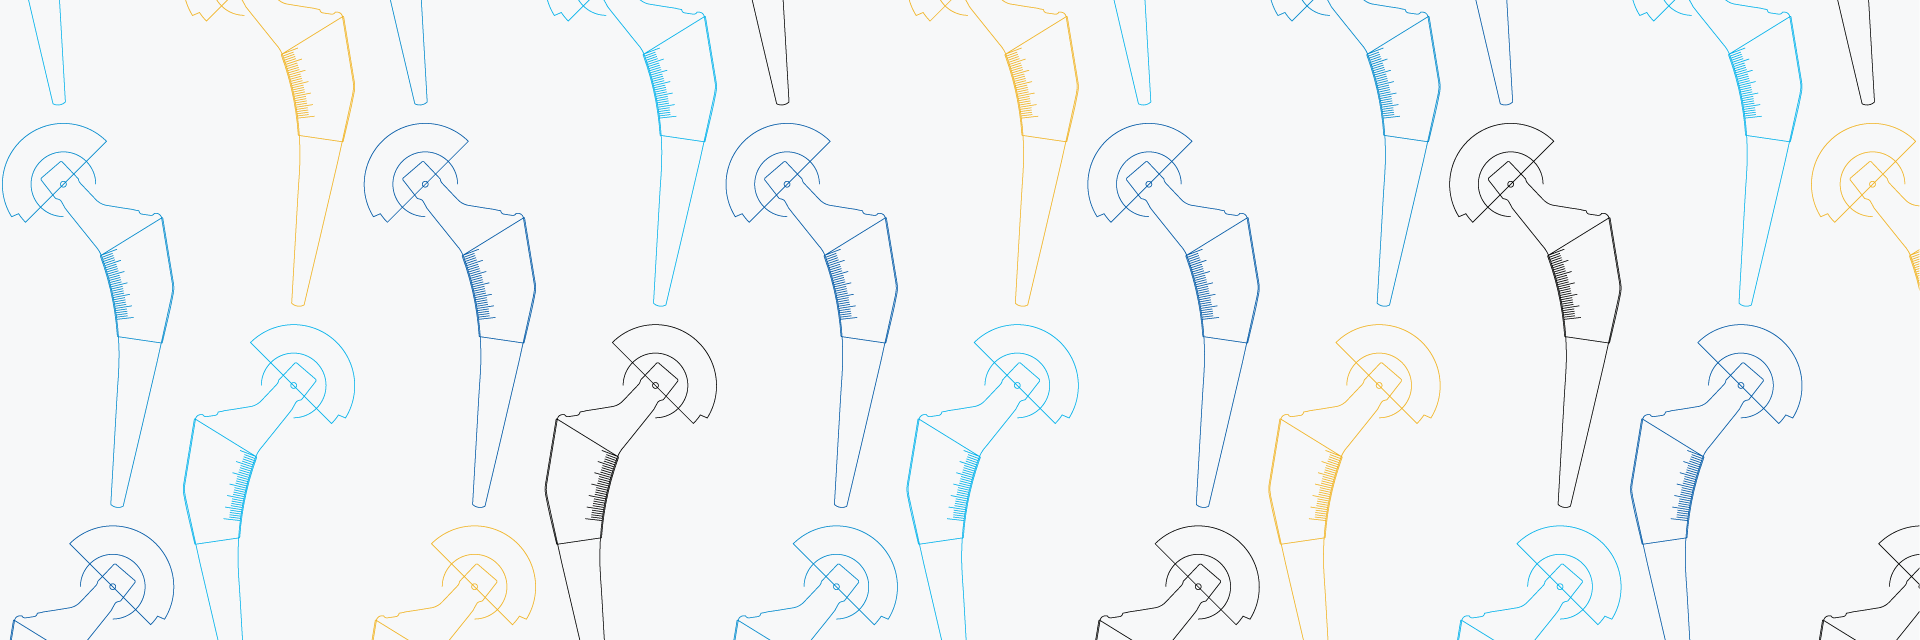 Motif illustré de contours d'os colorés avec différentes mesures